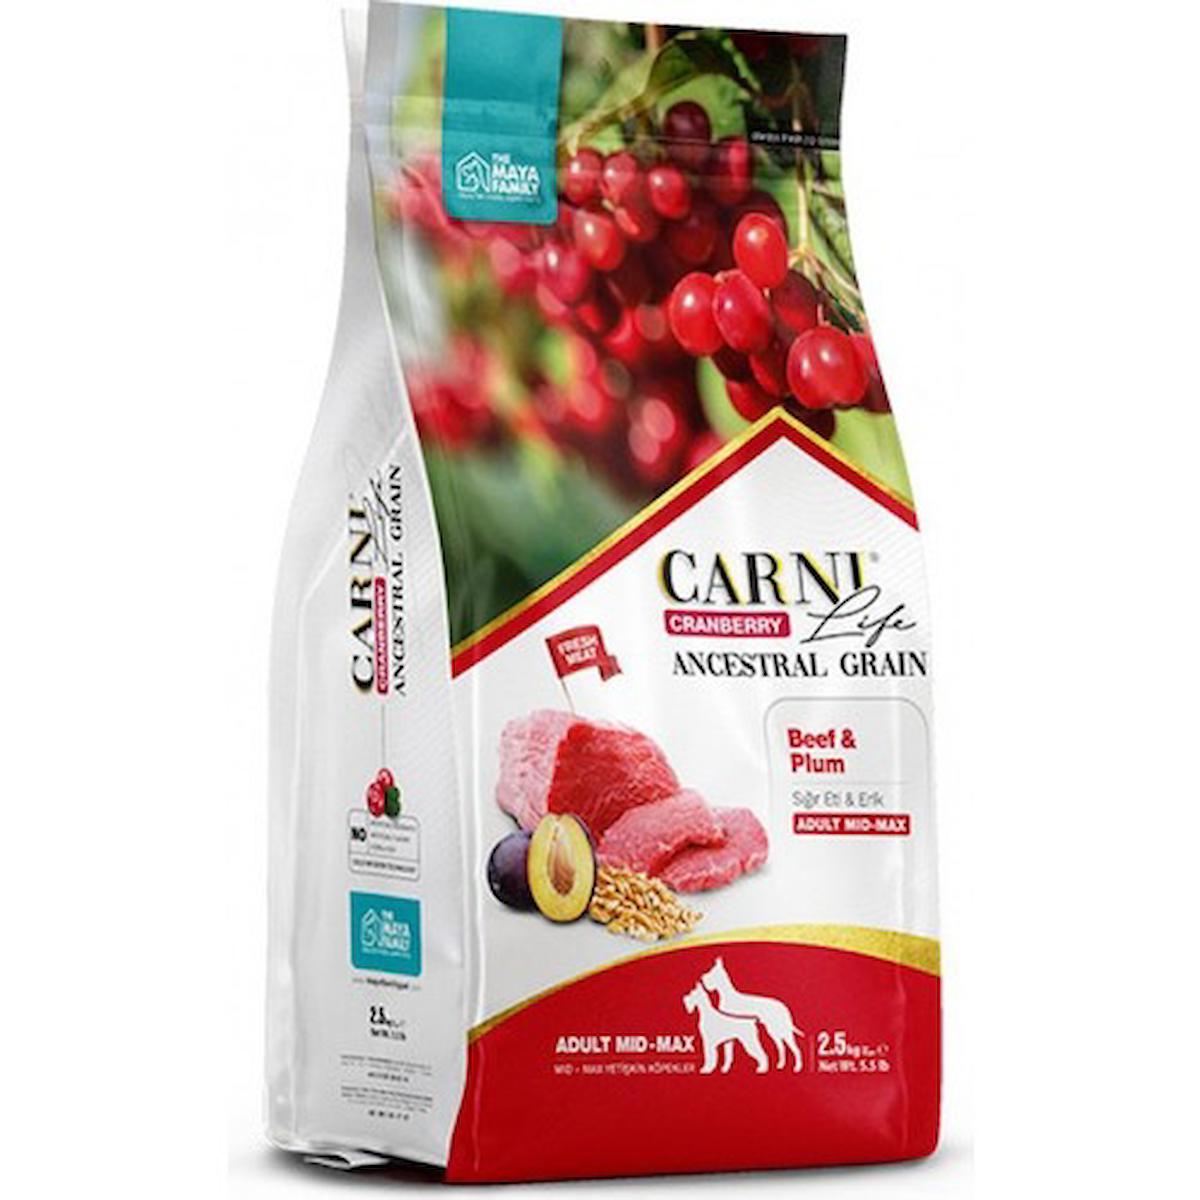 Carni Life Cranberry Erikli ve Sığır Etli Büyük ve Orta Irk Yetişkin Kuru Köpek Maması 2.5 kg